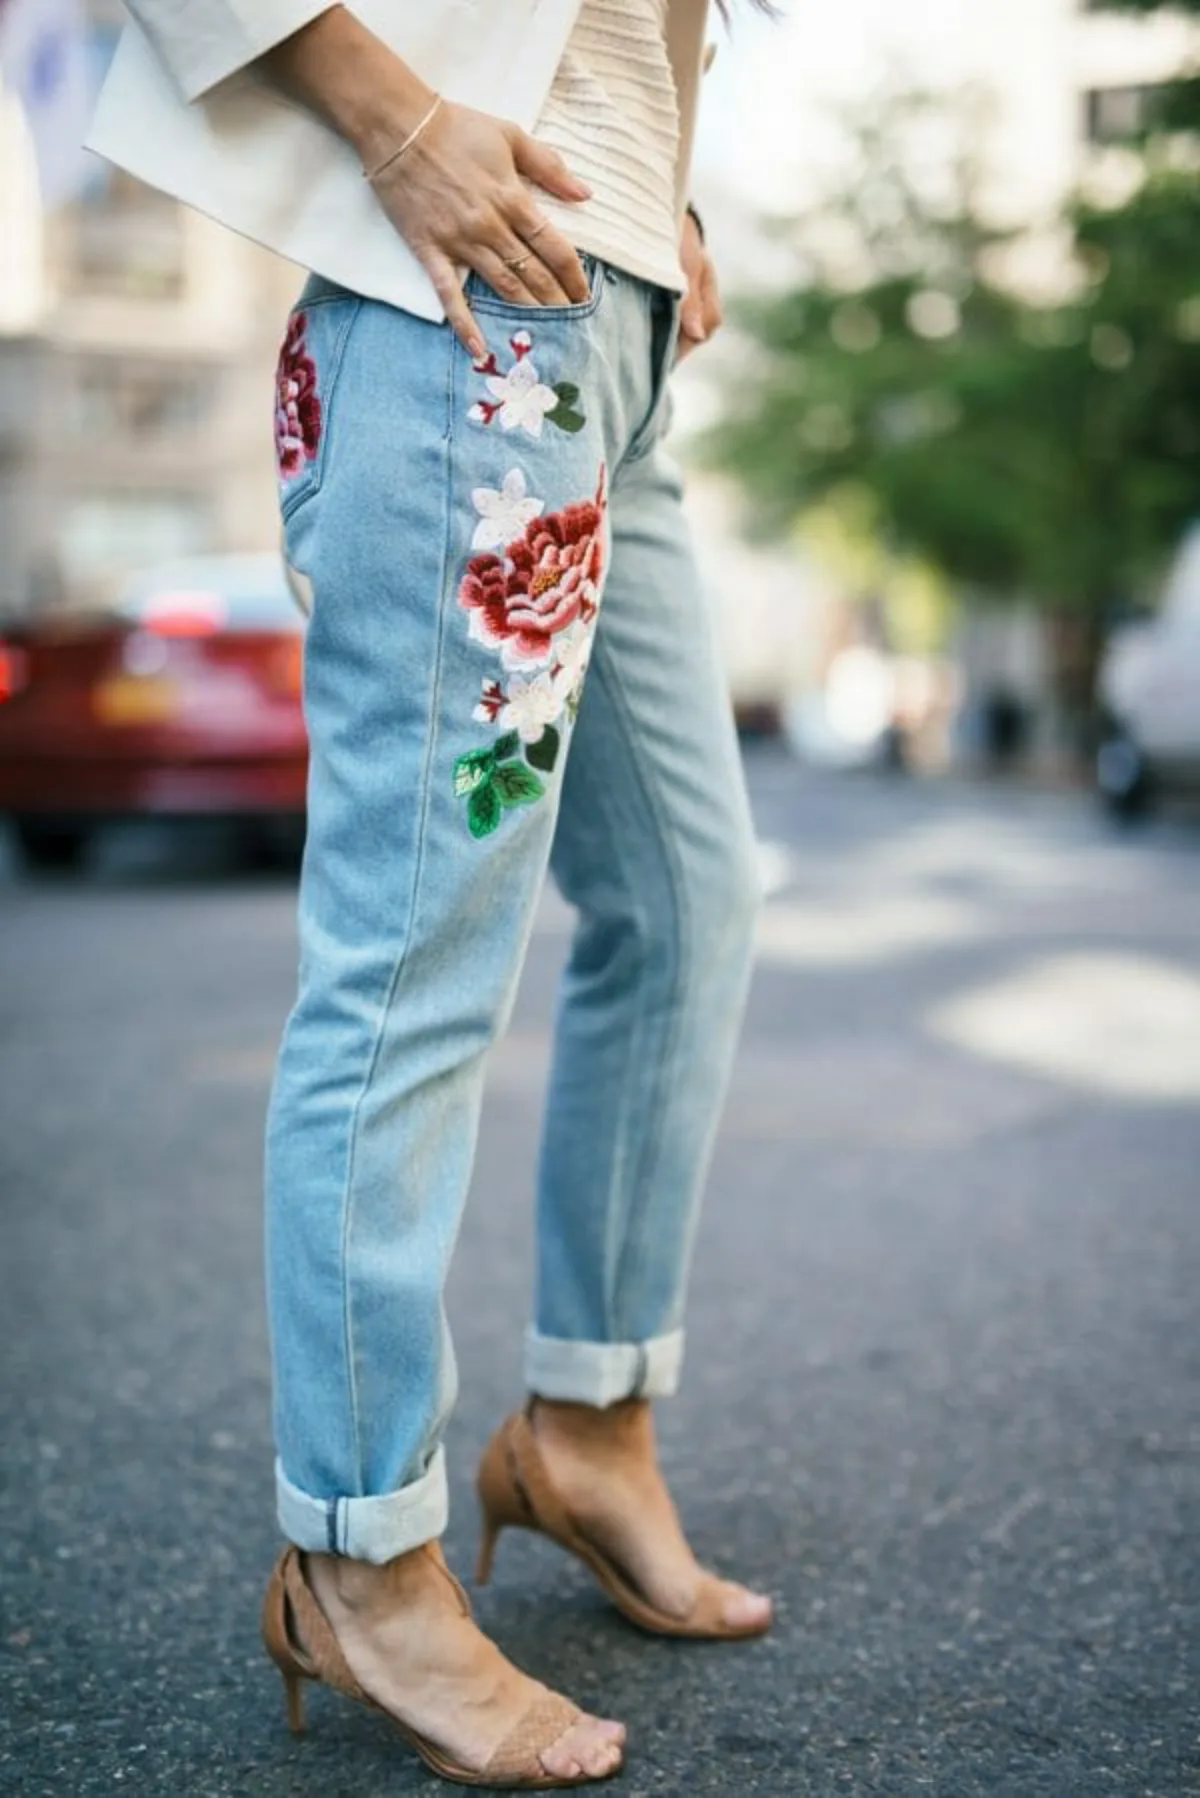 tendance fleurs 3 d sur une paire de jeans idée imprimé fleuri automne